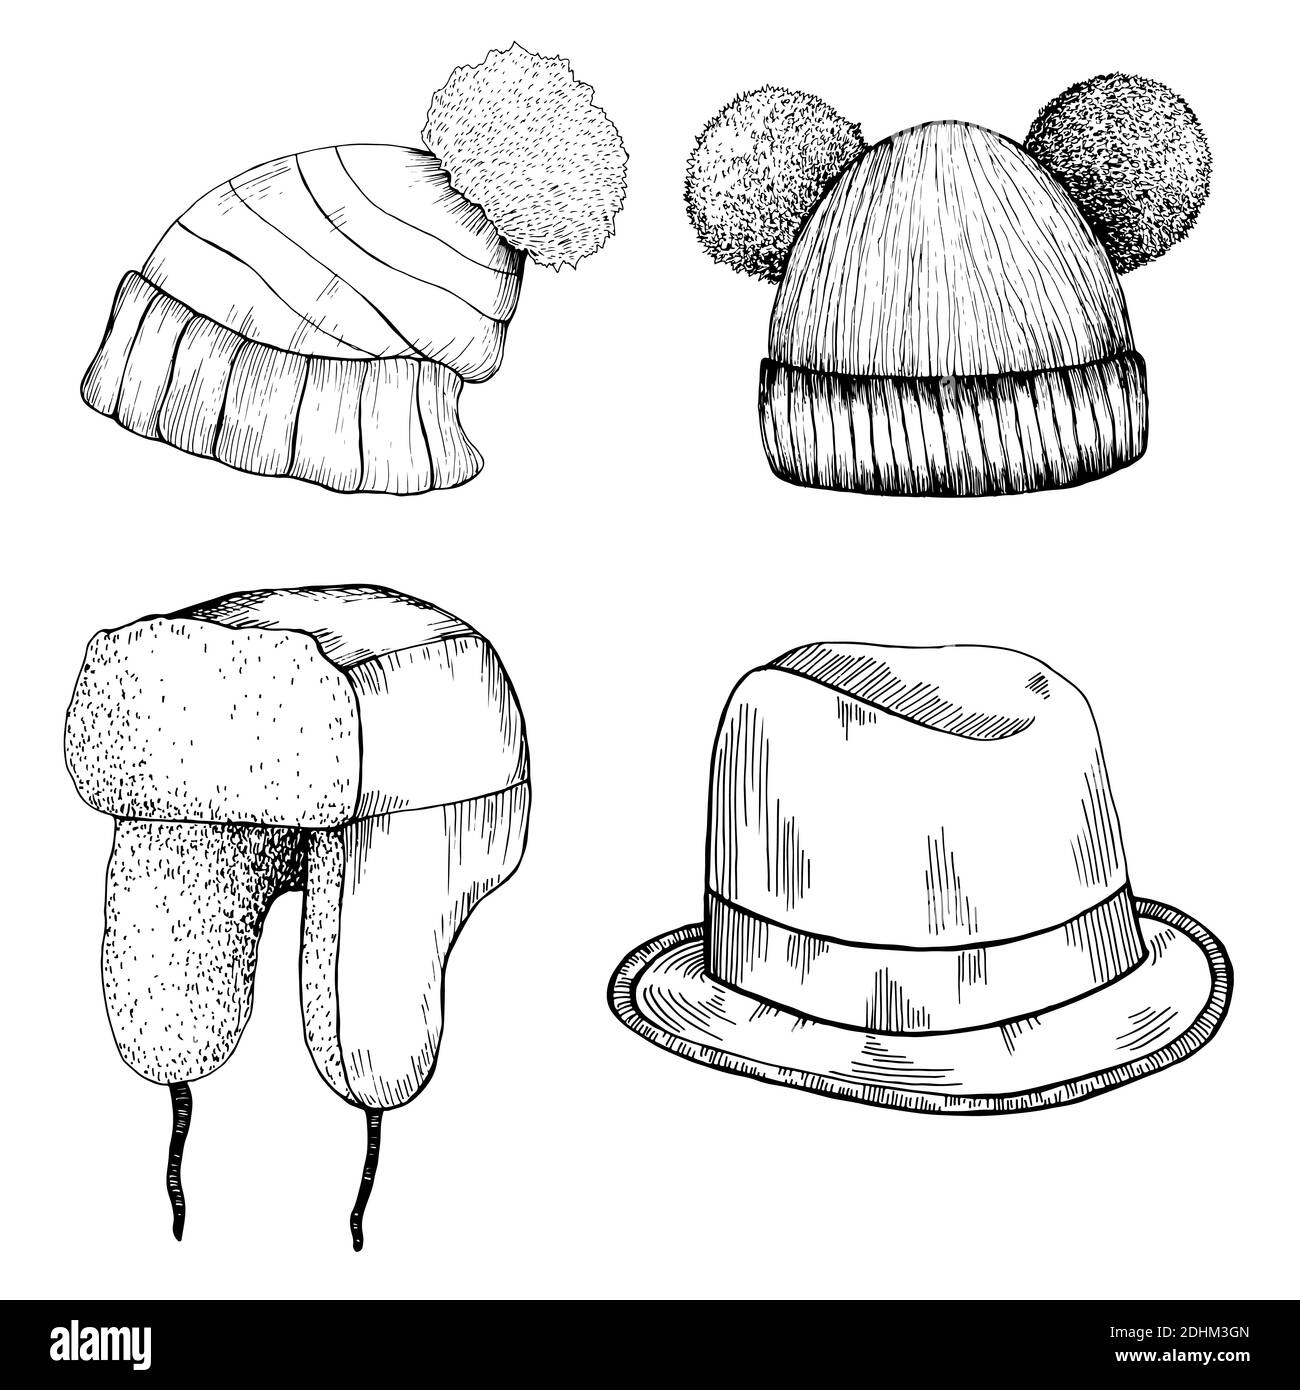 Cappelli in stile fumetto. Set di diversi cappelli con pom pom, cappello con lembi auricolari, cappello divertente con due pom-pom, cappello Homburg, isolato su bianco. Illustrazione Vettoriale